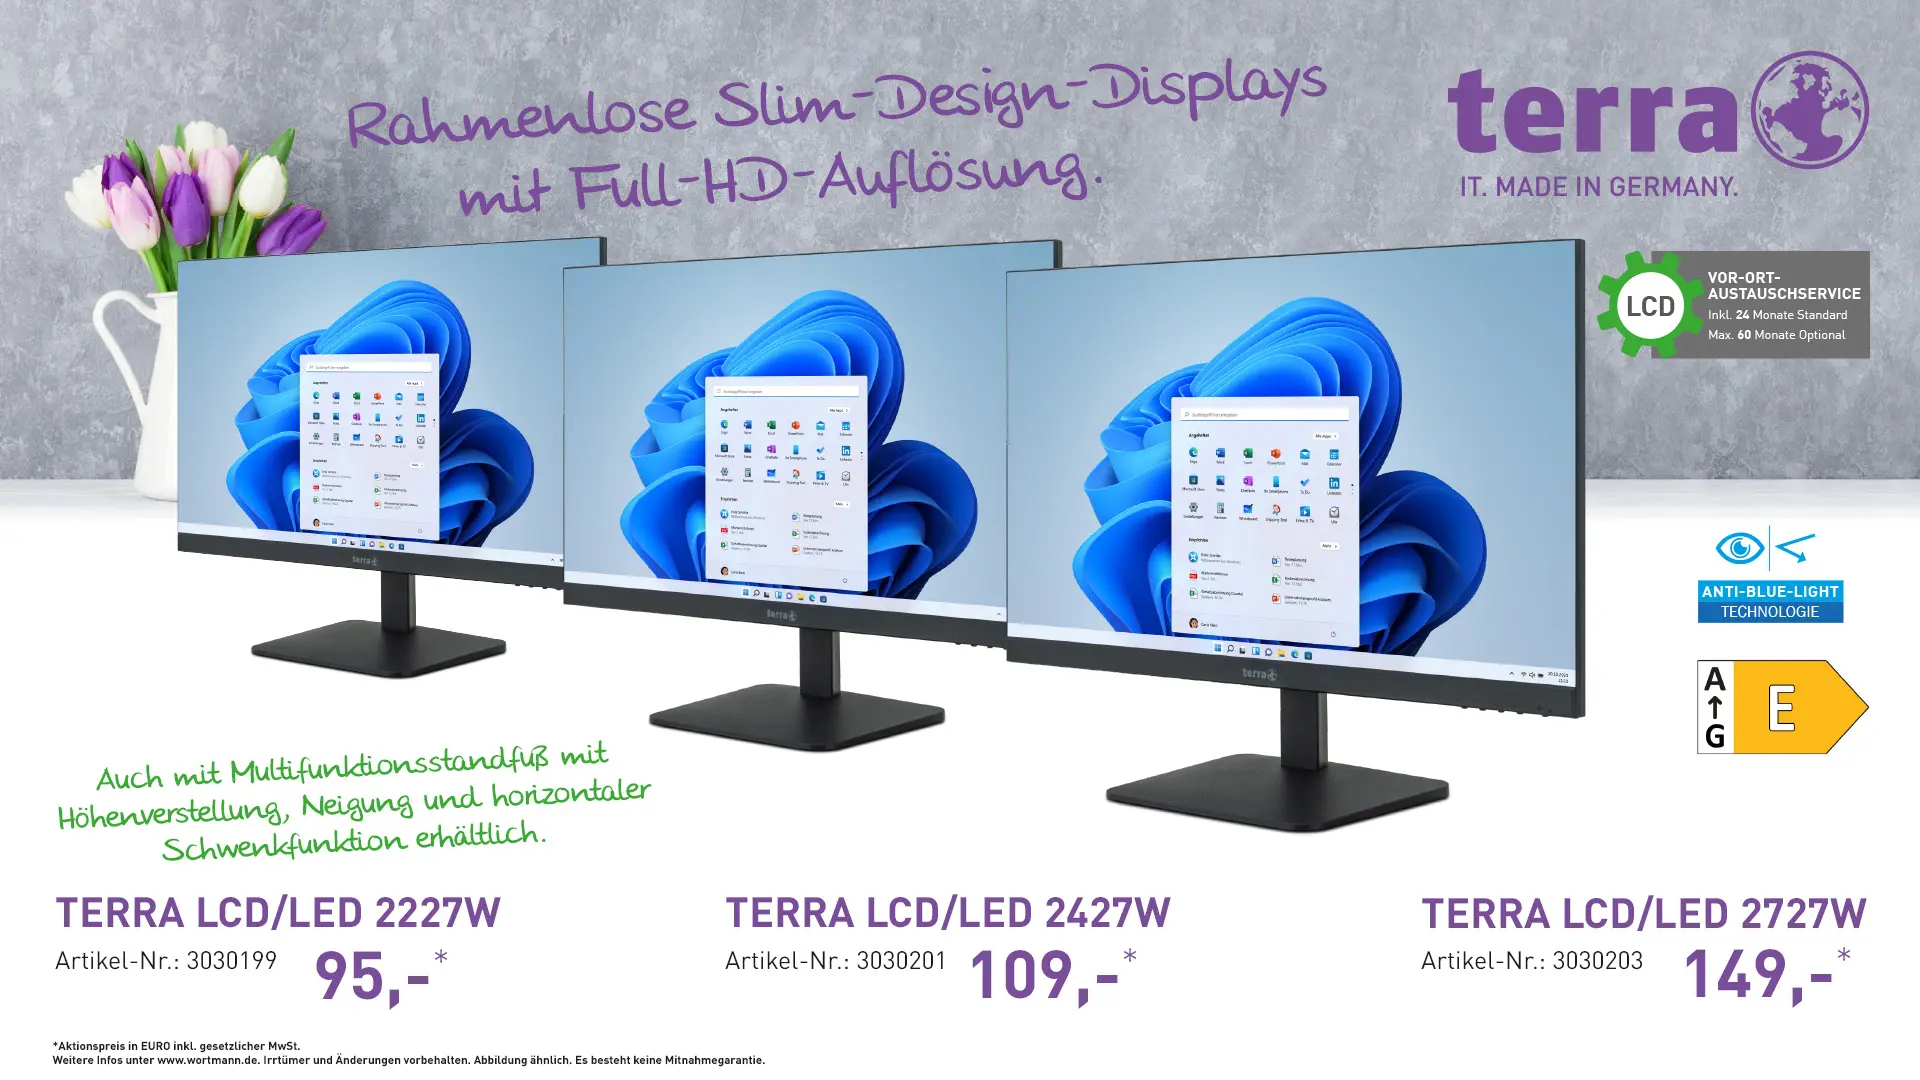 Terra LCD/LED 227w, Terra LCD/LED 2427w, Terra LCD/LED 2727W